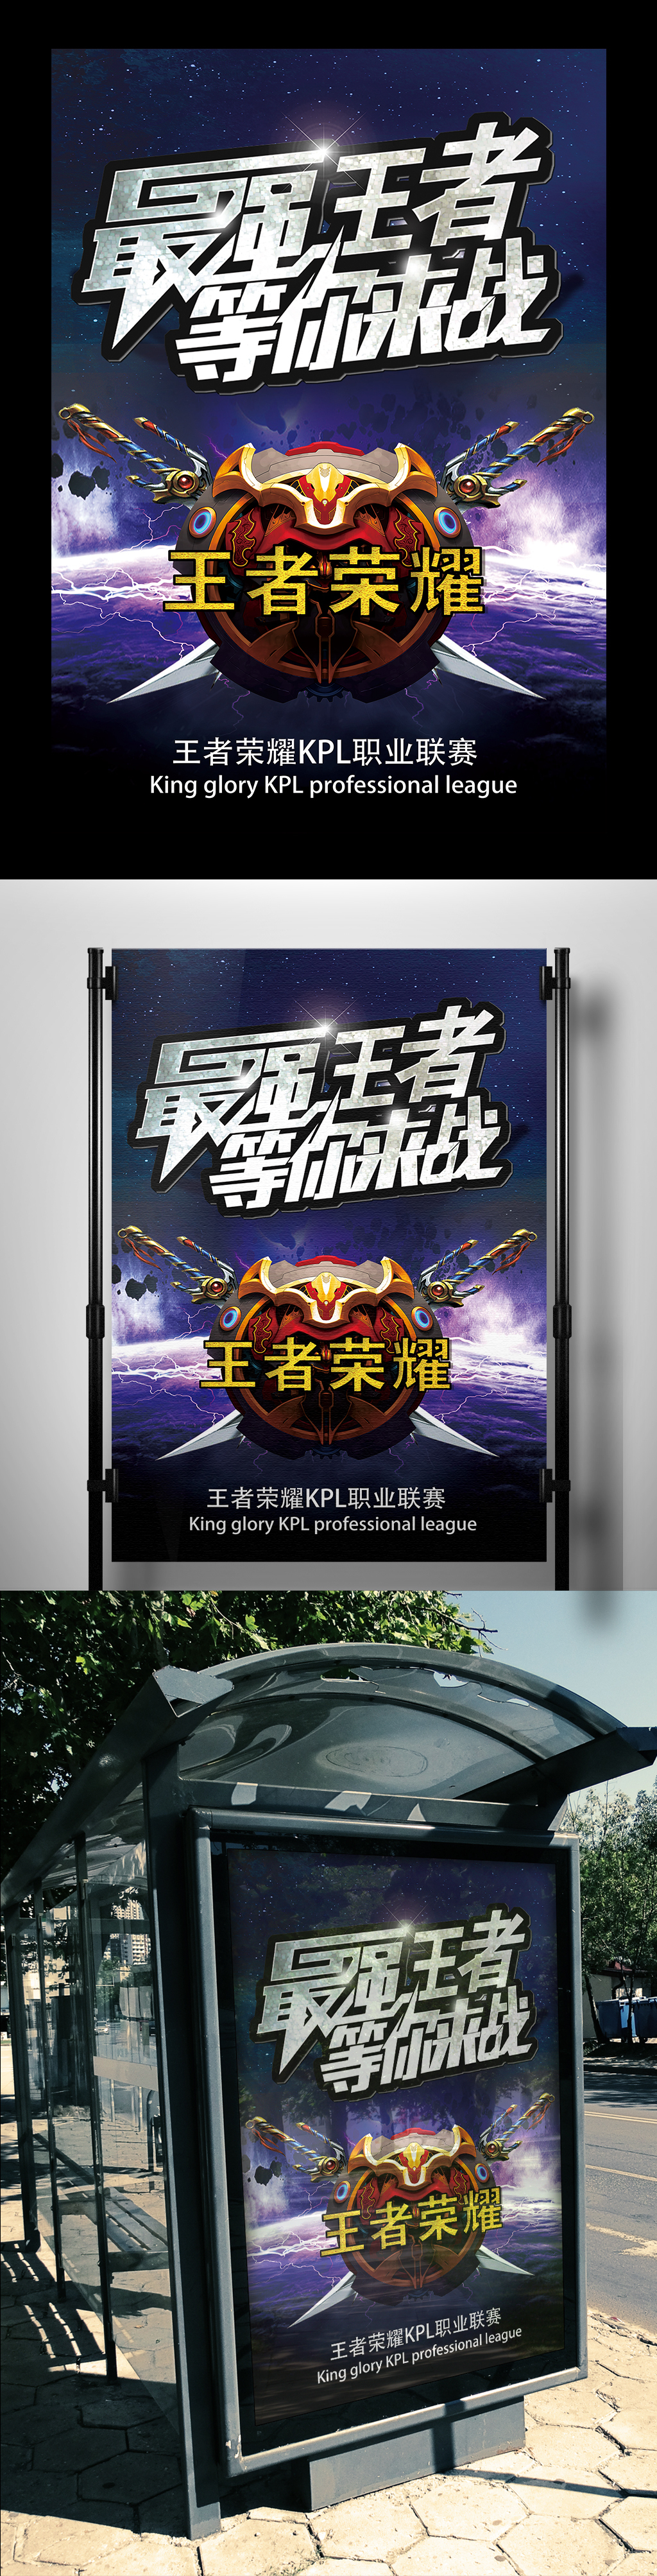 2017年紫的炫酷王者荣耀海报模板图片